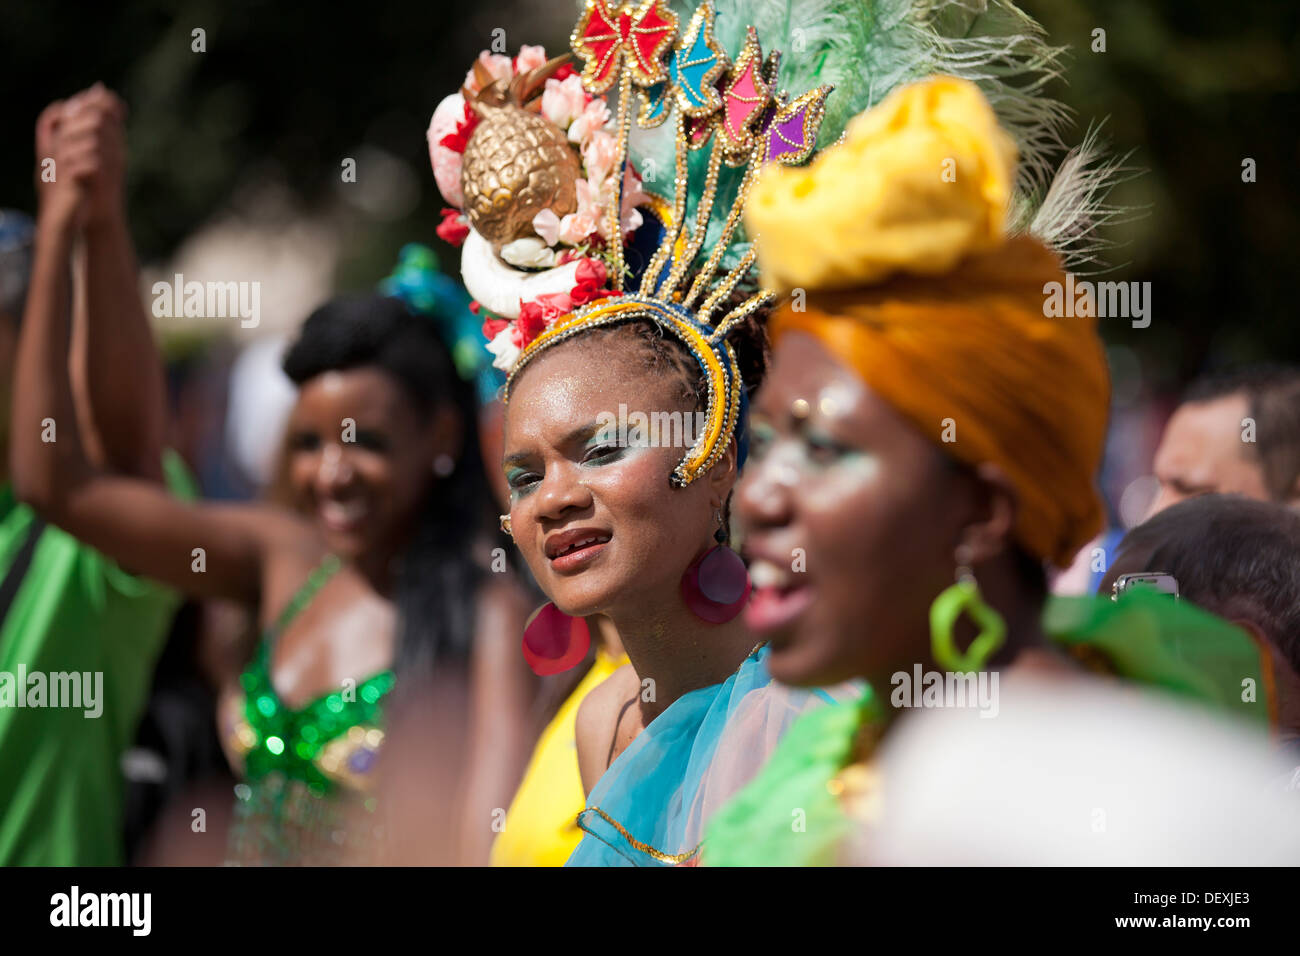 Danseuse de samba brésilienne en costume traditionnel Banque D'Images